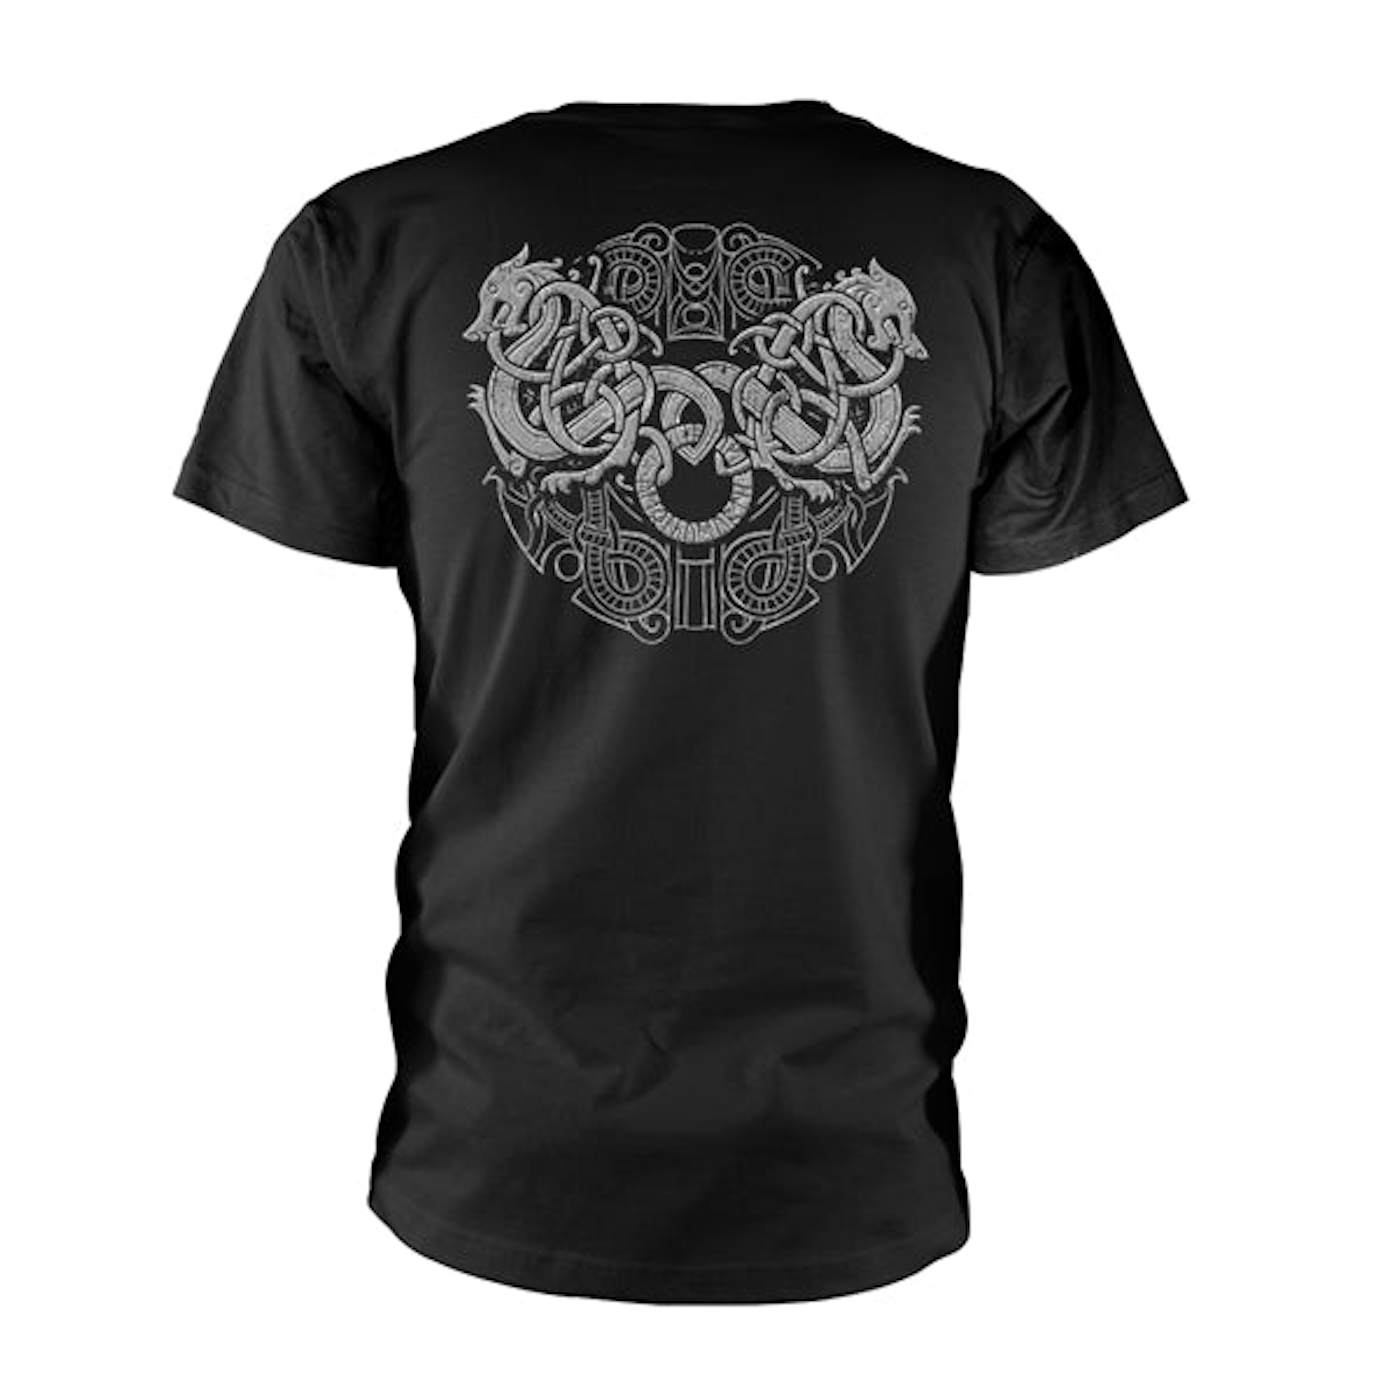 Amon Amarth T Shirt - Grey Skull